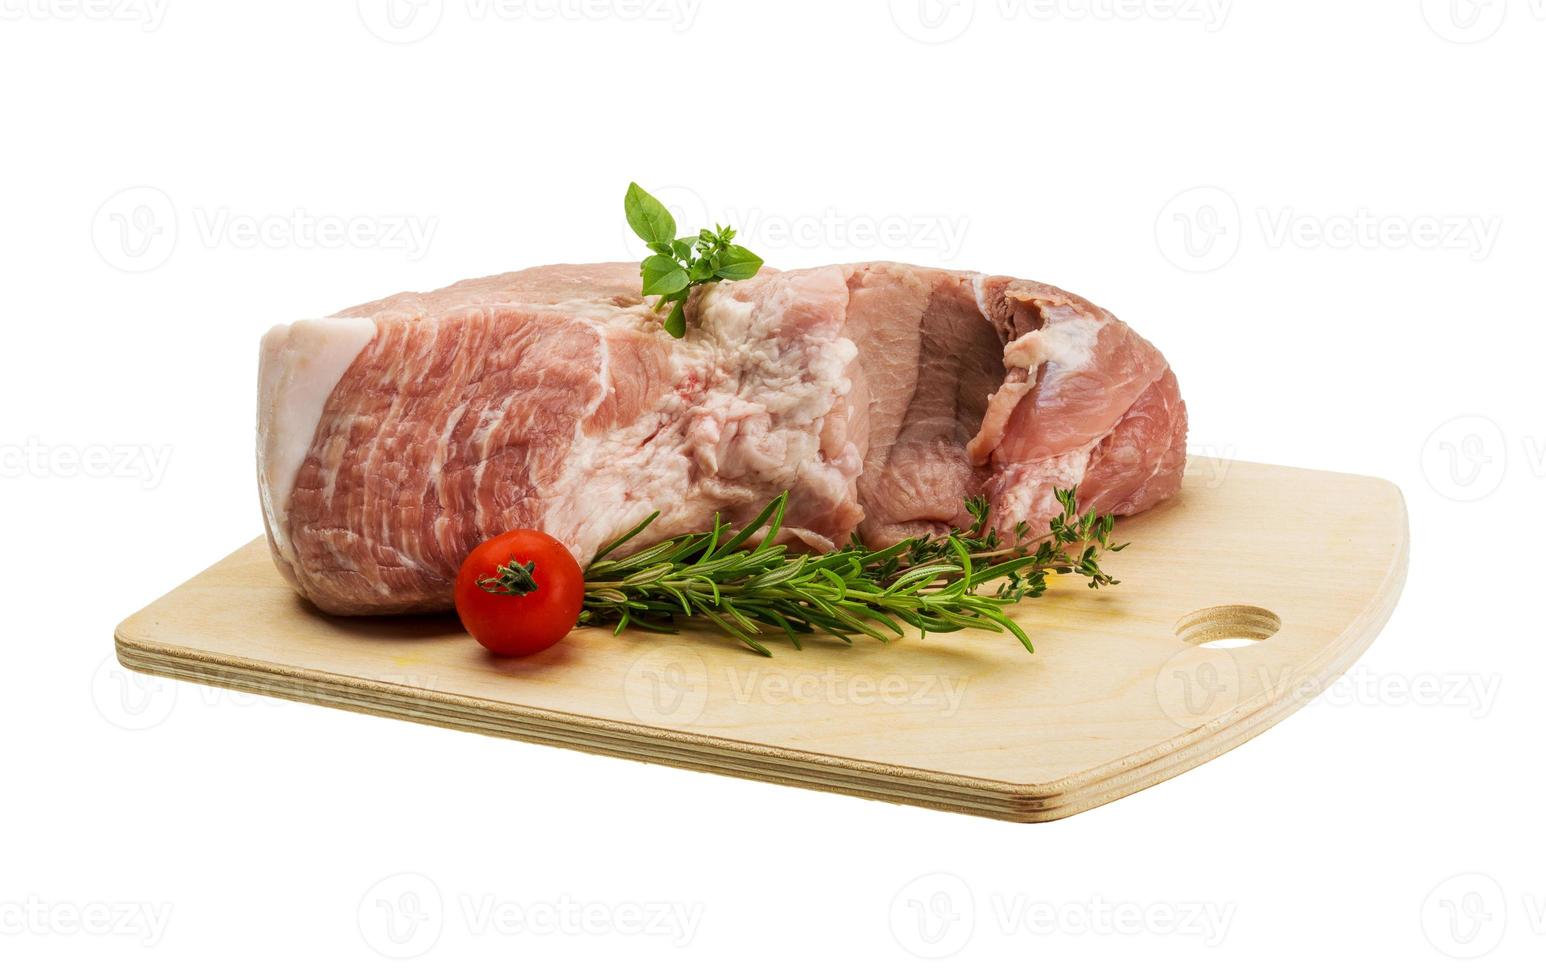 carne de porco crua na placa de madeira e fundo branco foto